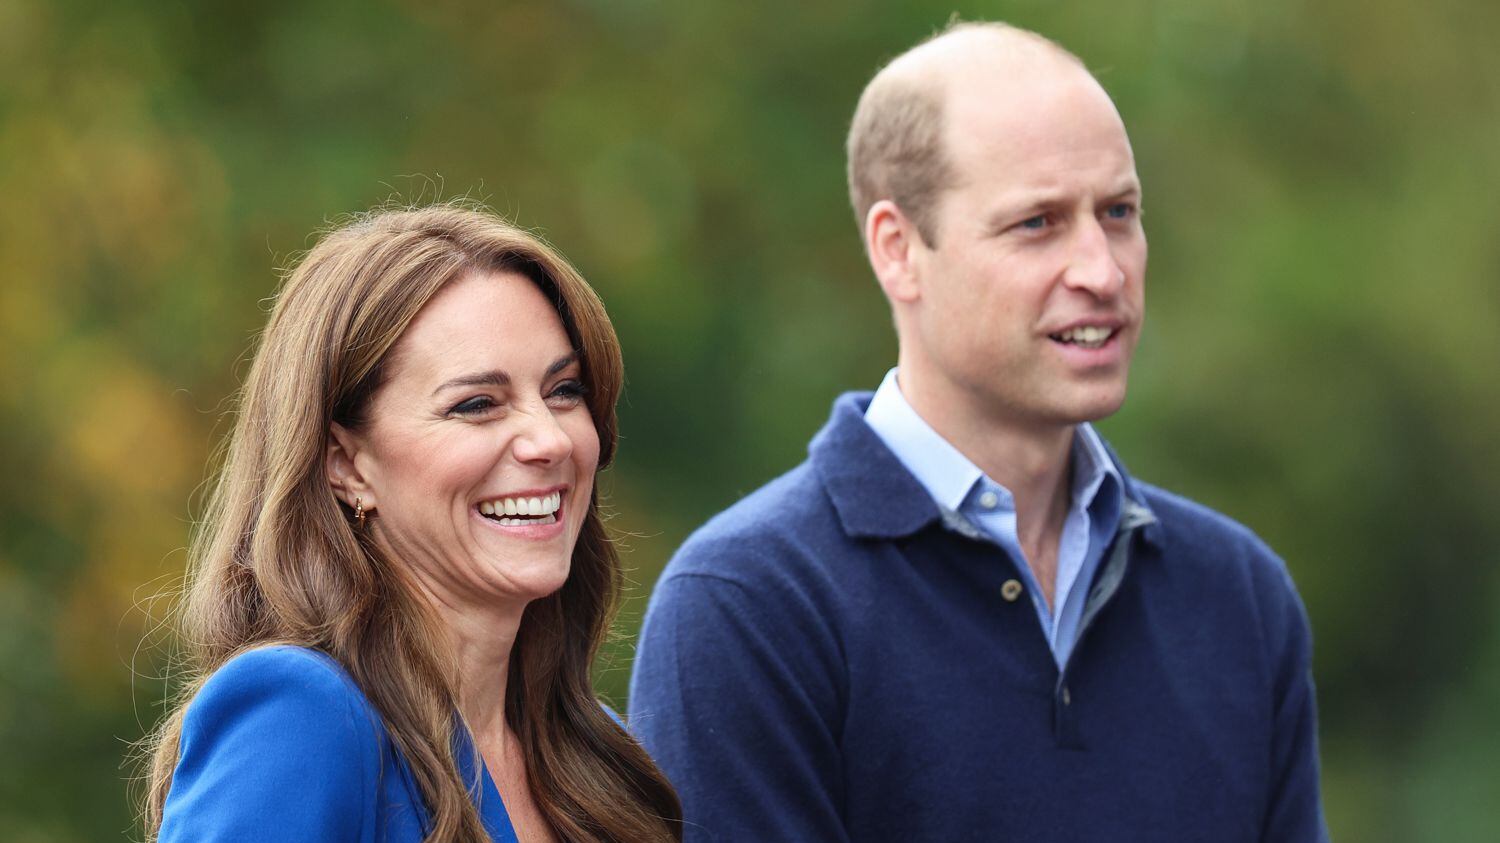 El extraño mensaje del príncipe William a Kate Middleton por su aniversario de bodas